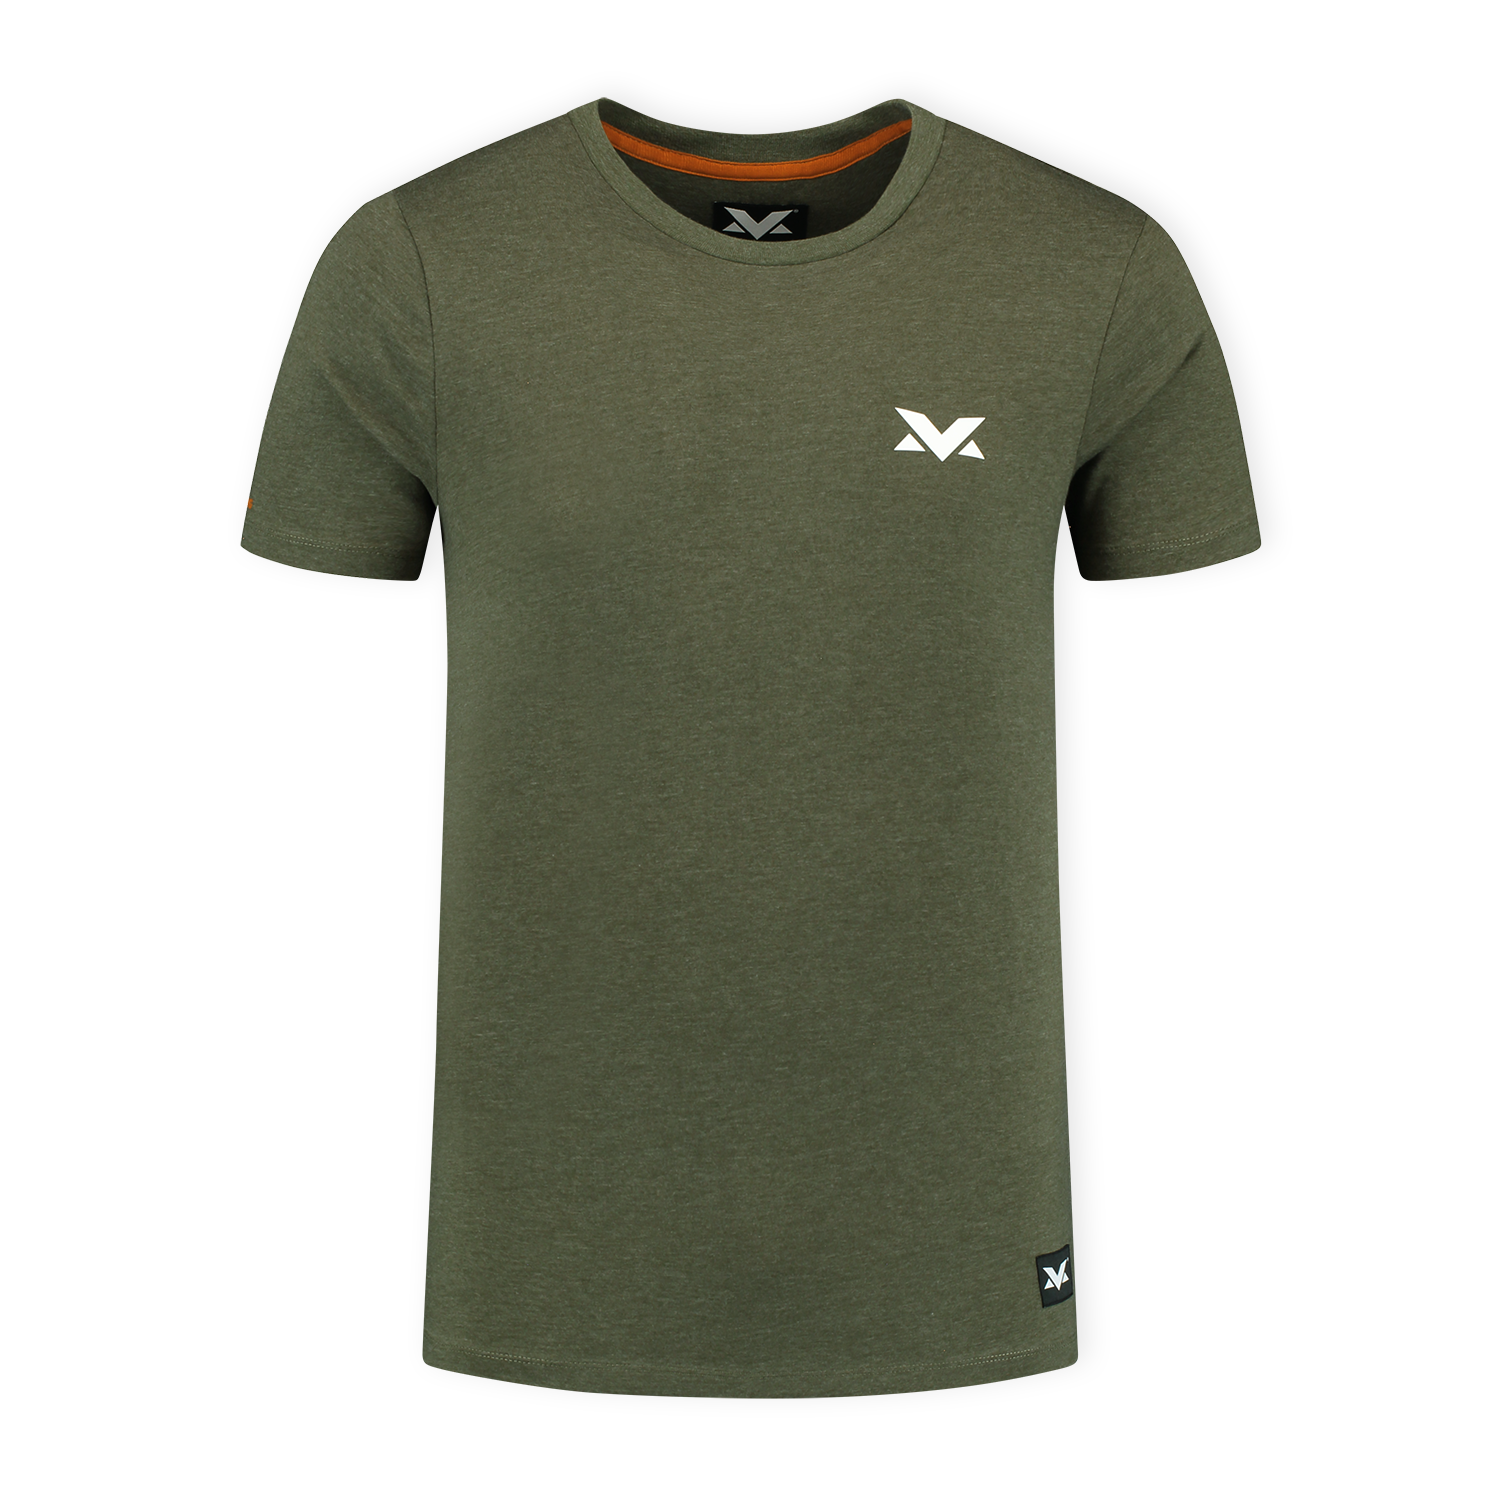 MV T-shirt The Limits - Groen - M - Max Verstappen